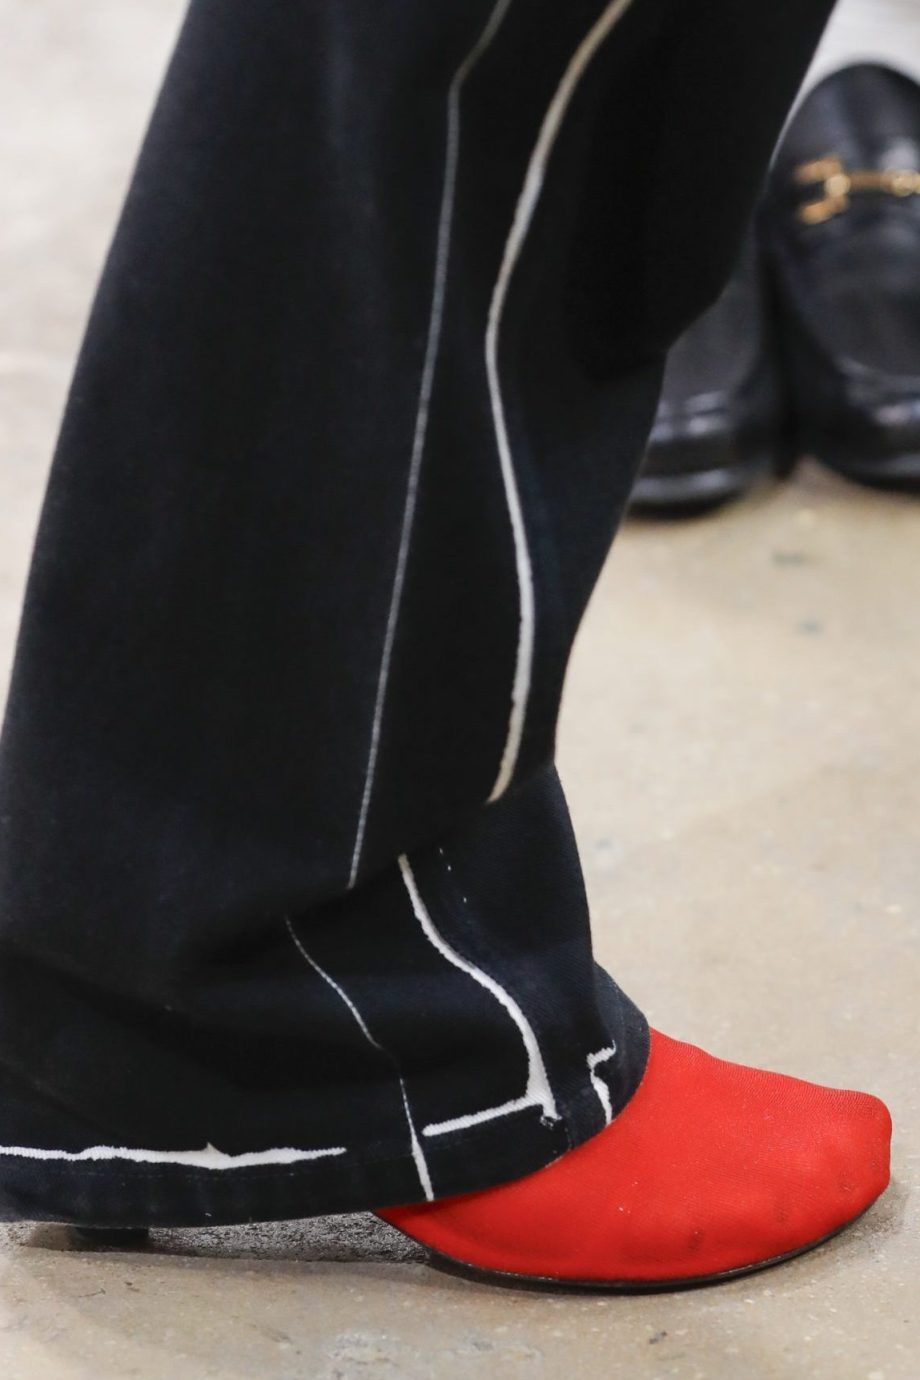 rode-schoenen-zijn-onze-nieuwe-favoriete-schoenentrend-en-ook-die-van-hailey-bieber-287048